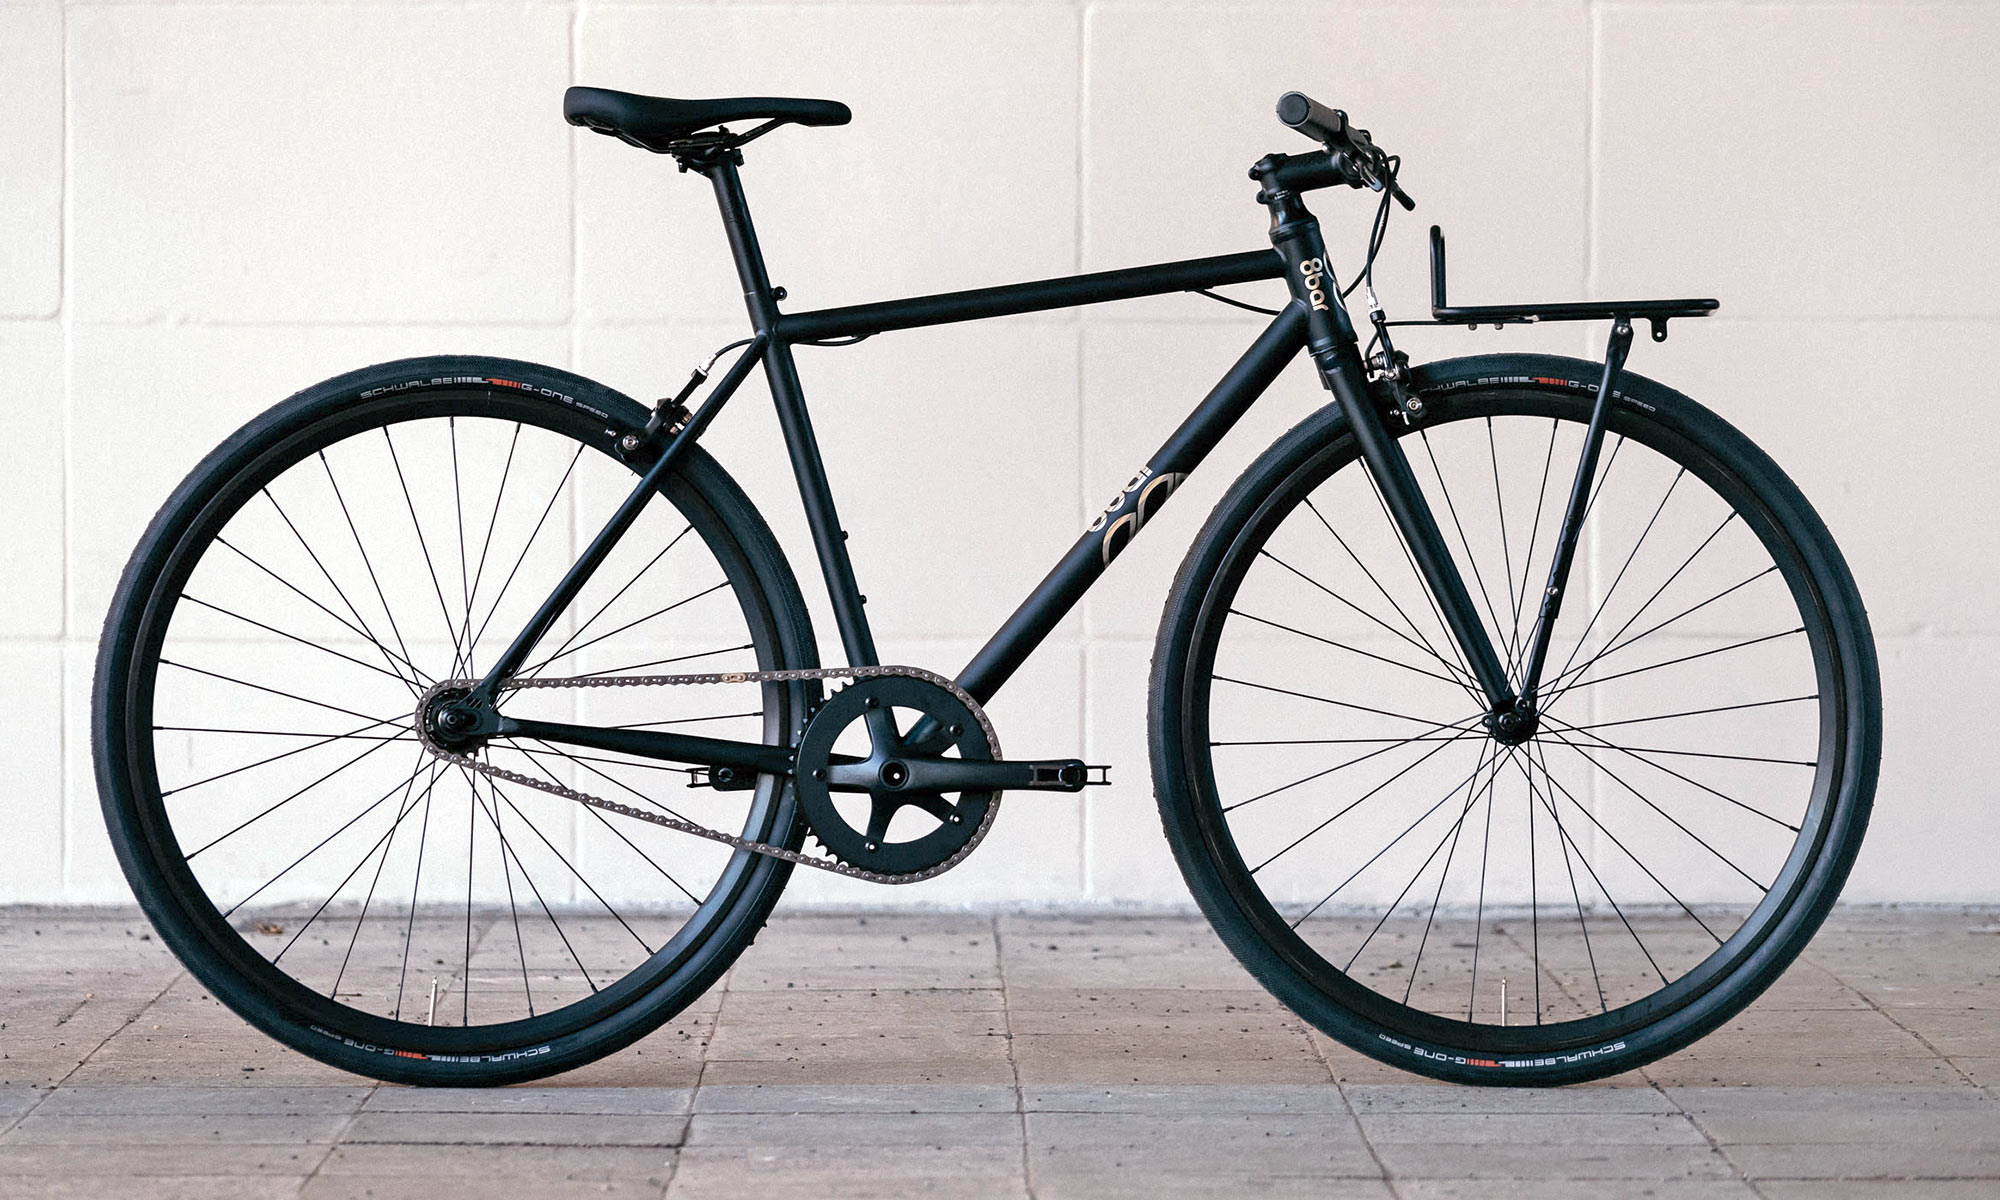 8bar Neukln steel v2 versatile affordable fixie singlespeed bike, photo by Stefan Haehnel, commuter